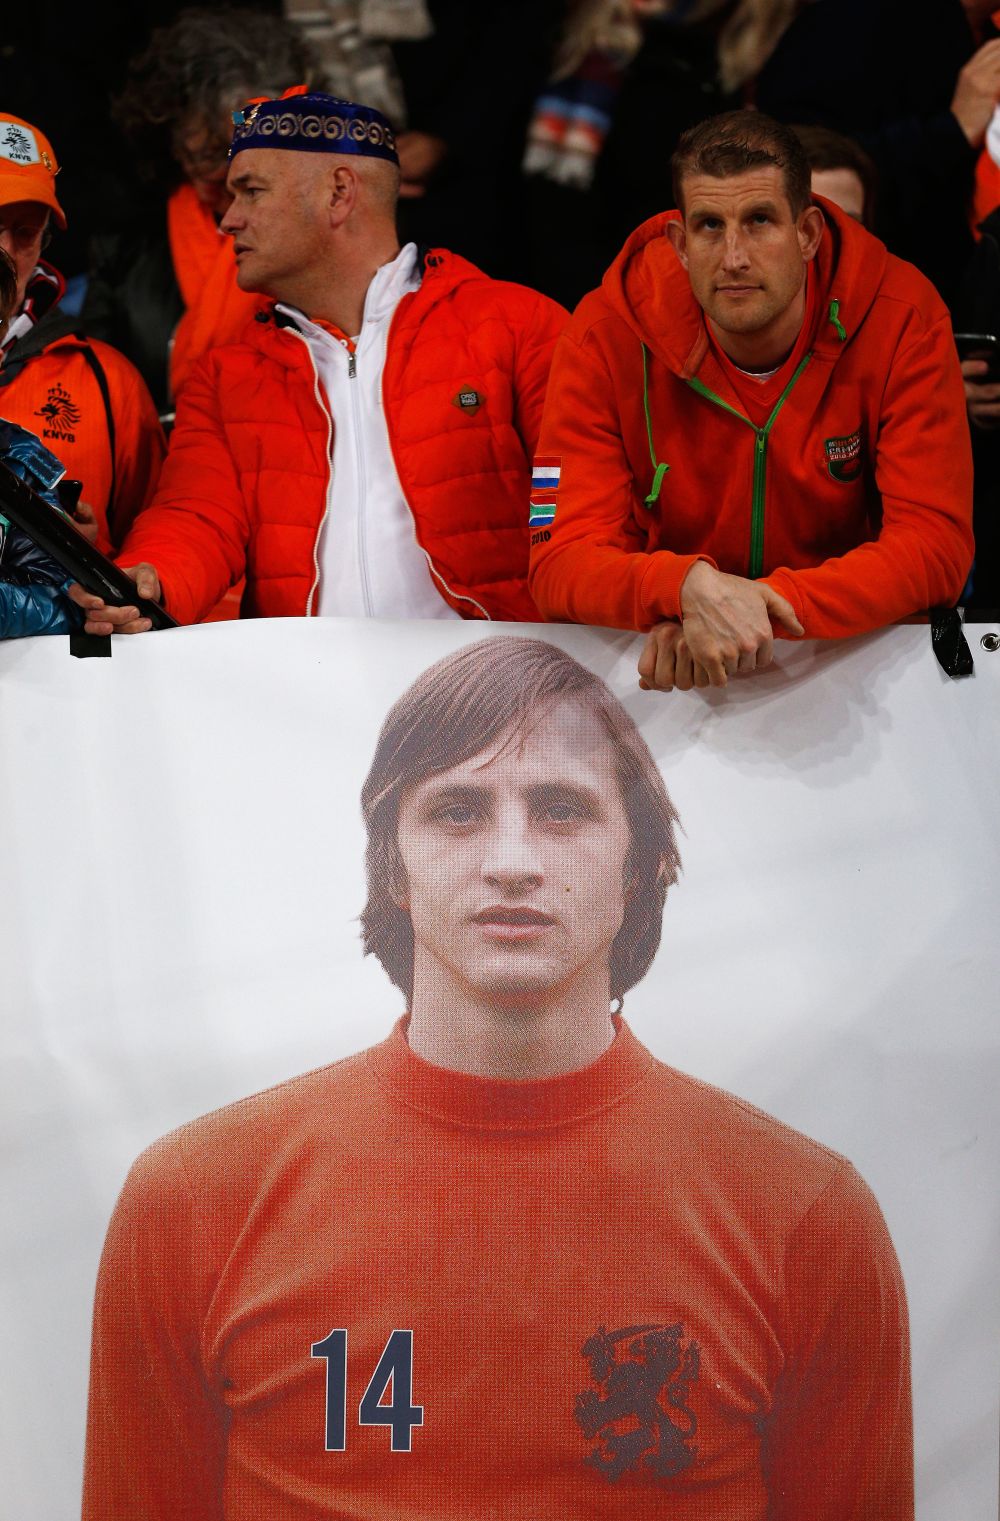 FOTO | Meciul lui "14". Olandezii l-au omagiat pe Johan Cruyff pe stadionul care ii va purta de acum numele. Cum s-a vazut meciul Olanda - Franta_4